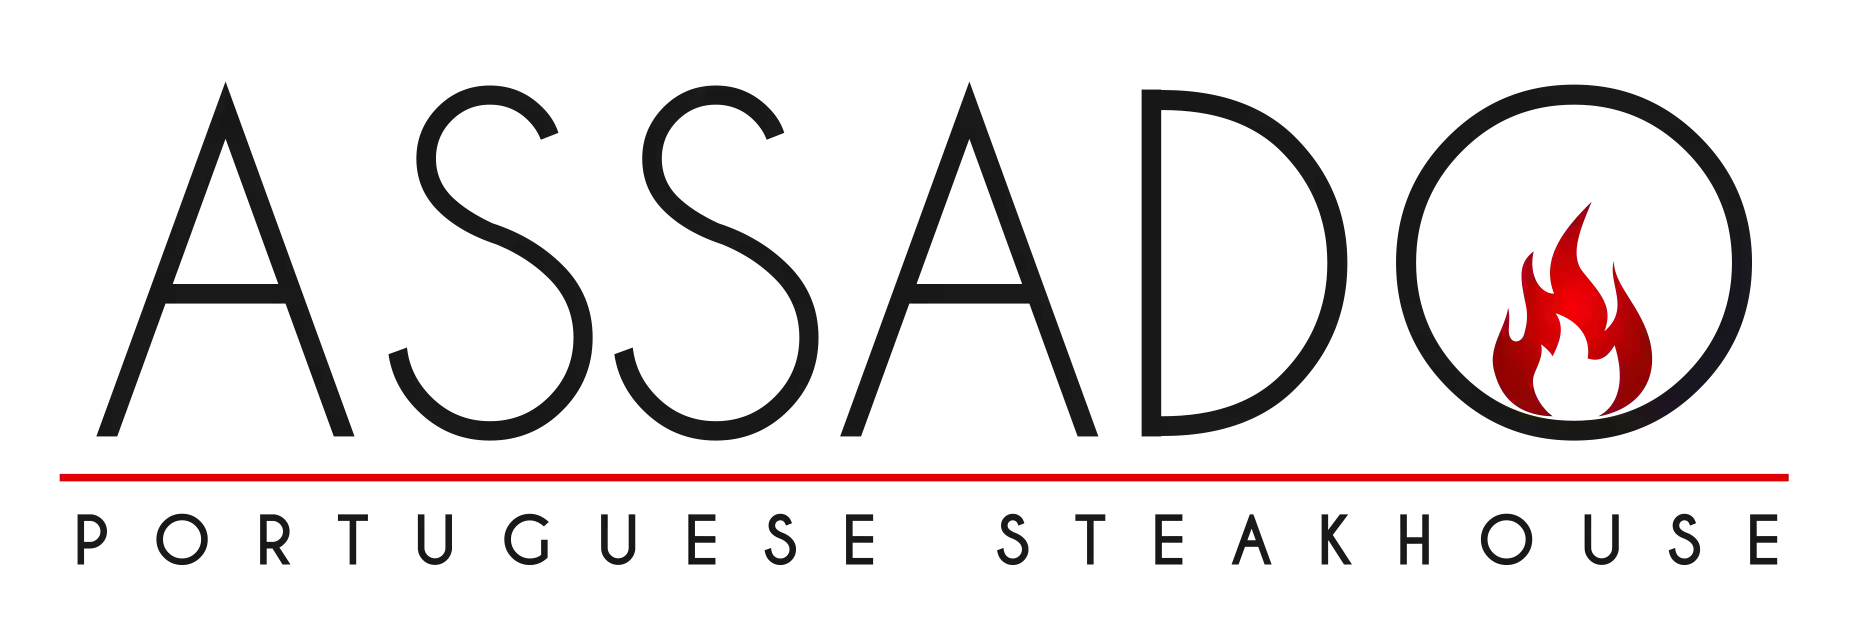 Assado Portuguese Steakhouse